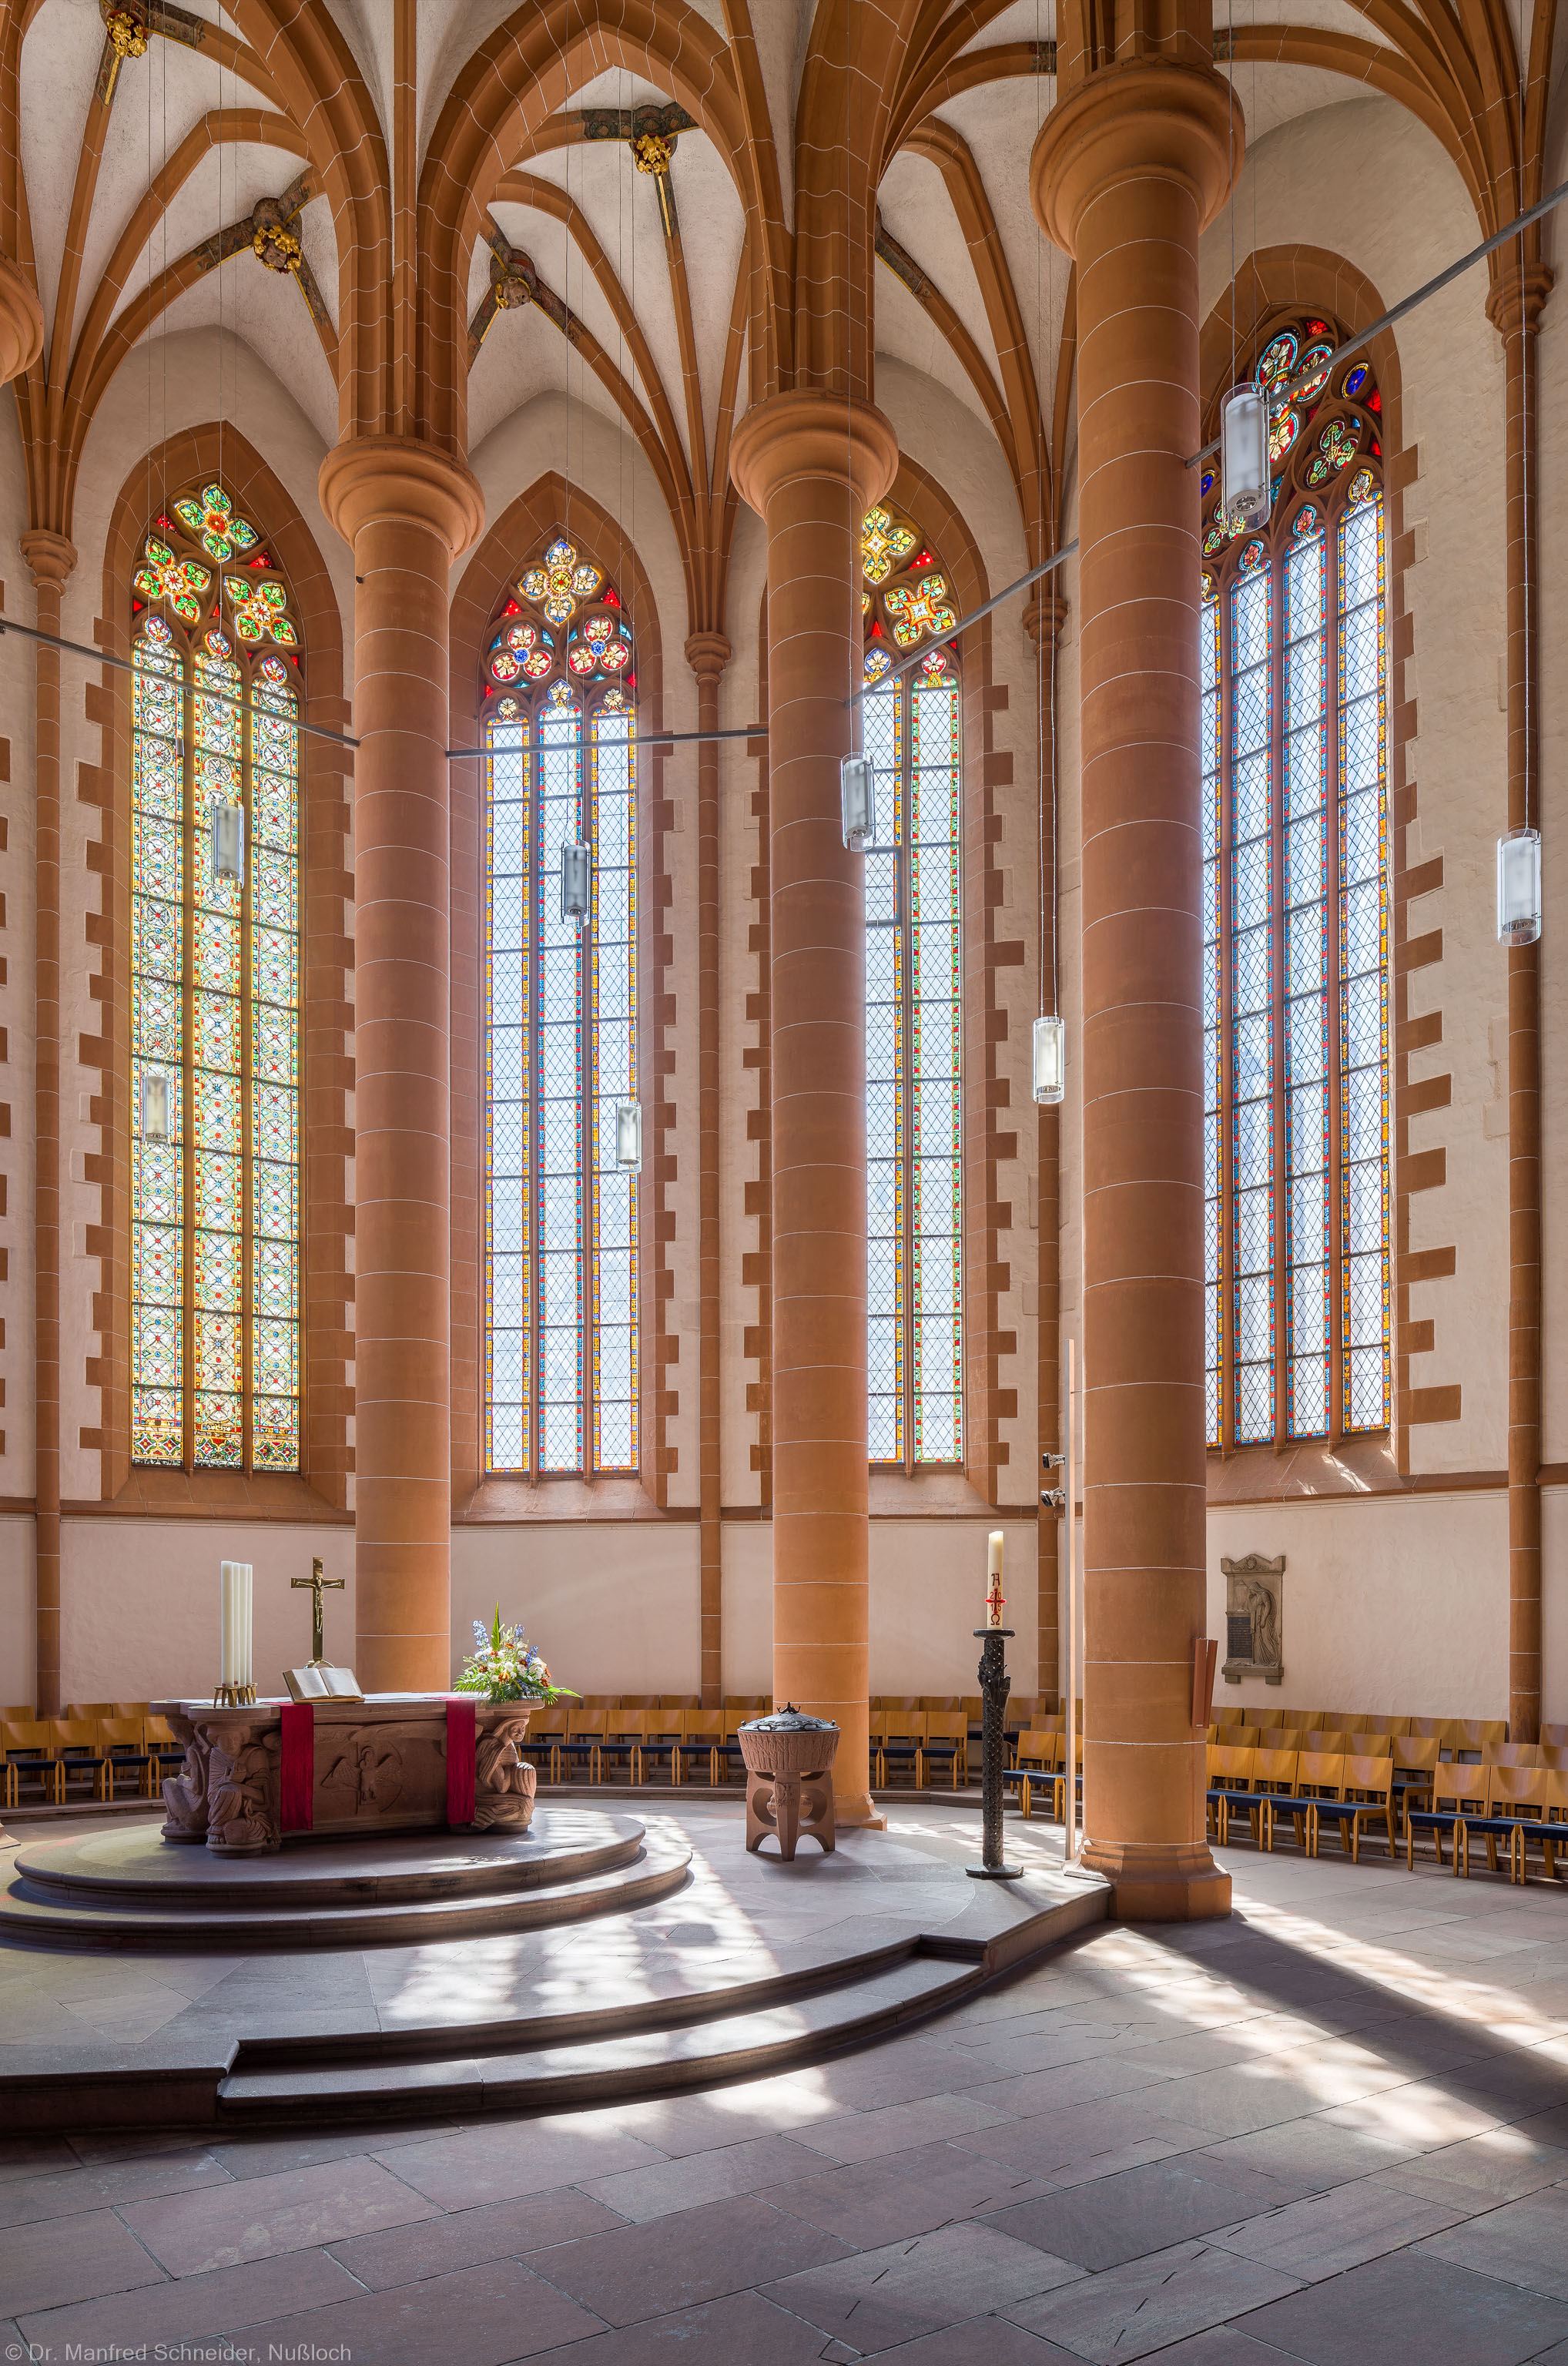 Heidelberg - Heiliggeistkirche - Chor - Blick in den Chor nach Südosten mit Säulen, Gewölbe und Altar (aufgenommen im Mai 2015, am späten Vormittag)